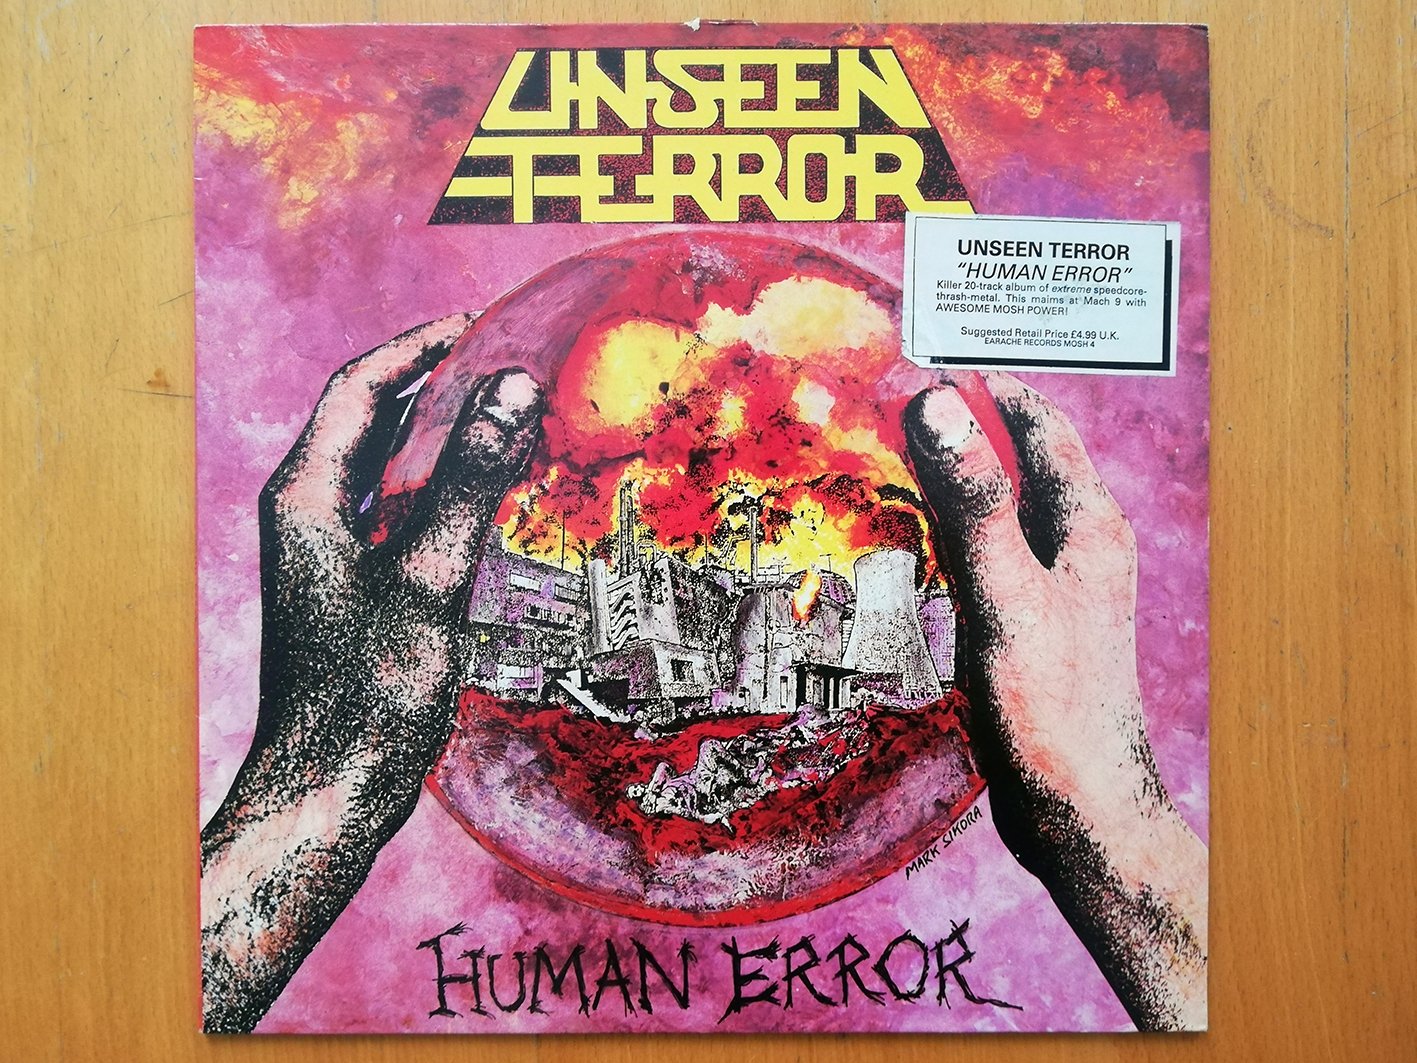 Unseen Terror - Human Error LP front cover 2.jpg